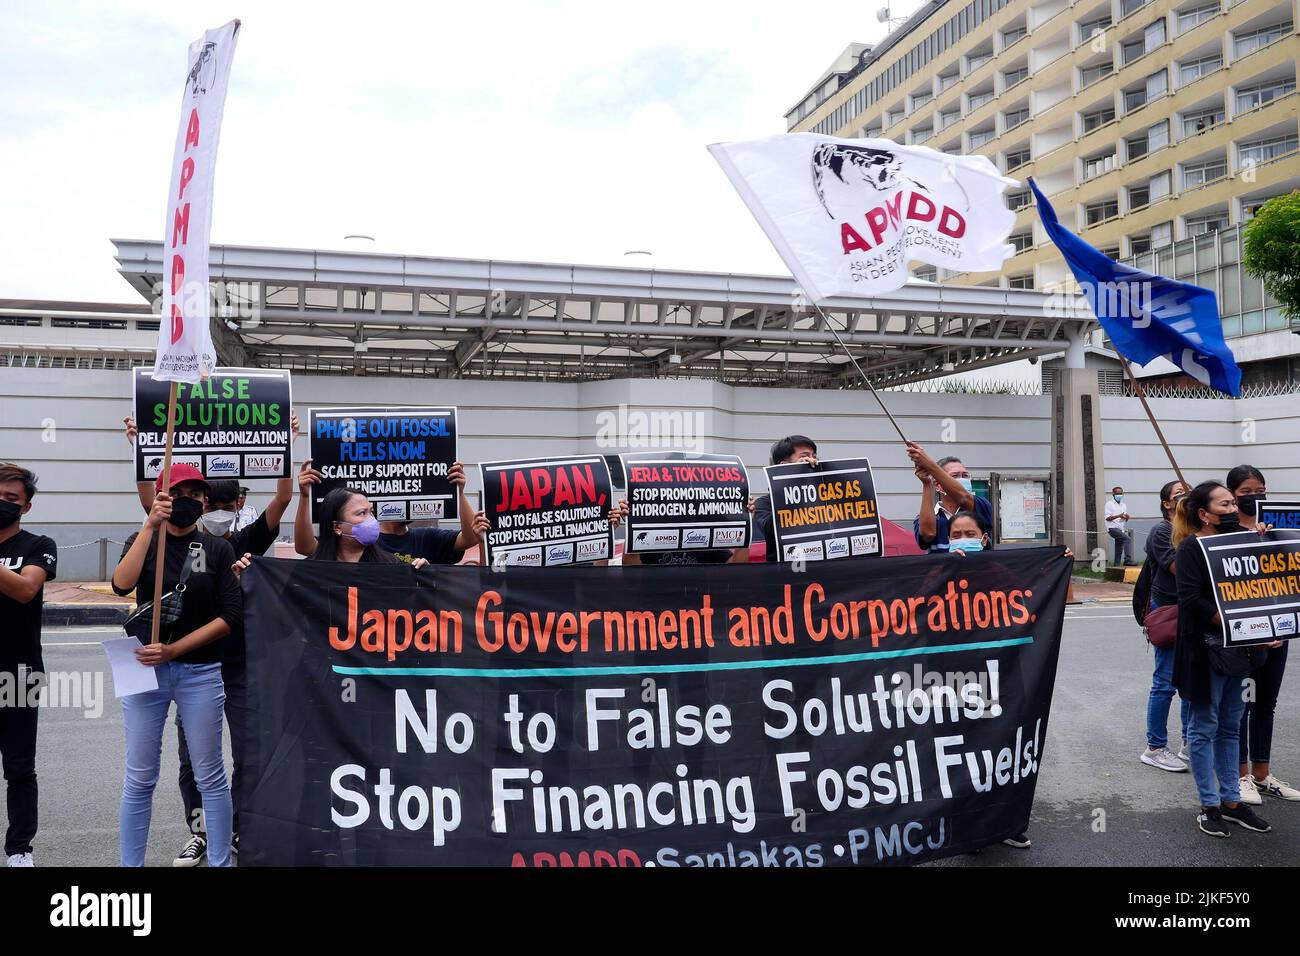 Pasay City, NCR, Philippinen. 1. August 2022. Klimaaktivisten haben heute vor der japanischen Botschaft in Manila eine Aktion durchgeführt, um gegen die Förderung von fossilem Gas und Wasserstoff durch die japanische Energiebehörde sectorÃ¢â‚¬â„¢für die Stromerzeugung zu protestieren, um die Bemühungen um eine CO2-Neutralität bis 2050 zu beschleunigen. Ähnliche Aktionen wurden in Bangladesch und Indonesien durchgeführt. Die Demonstranten forderten die japanische Regierung und die Unternehmen auf, die Finanzierung fossiler Brennstoffe und die Förderung von Technologien einzustellen, die falsche Lösungen für die Klimakrise sind. (Bild: © George Buid/ZUMA Press Wire) Stockfoto